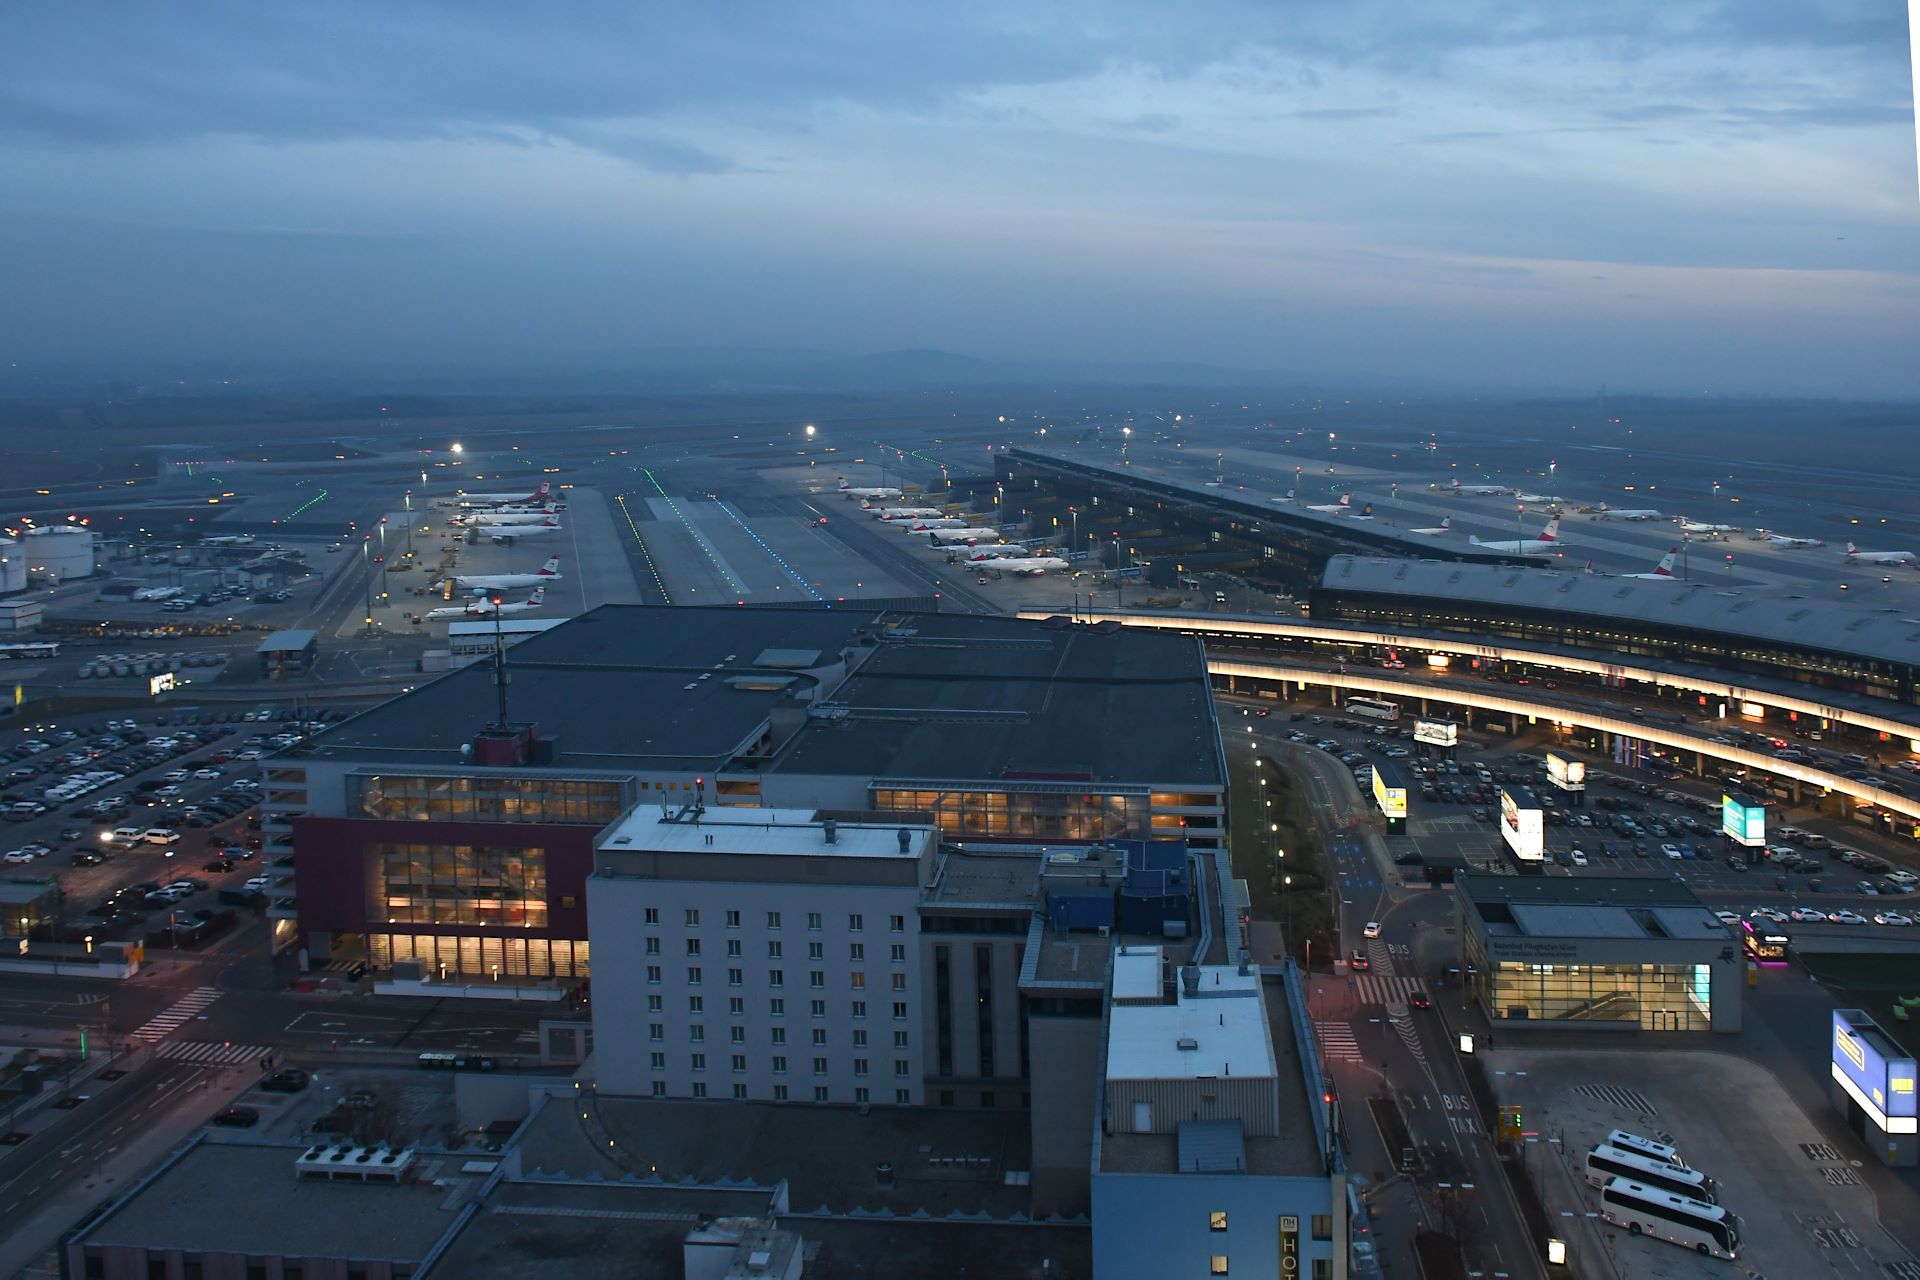 Vienna International Airport (VIE) - Flughafen Wien Schwechat - LOWW